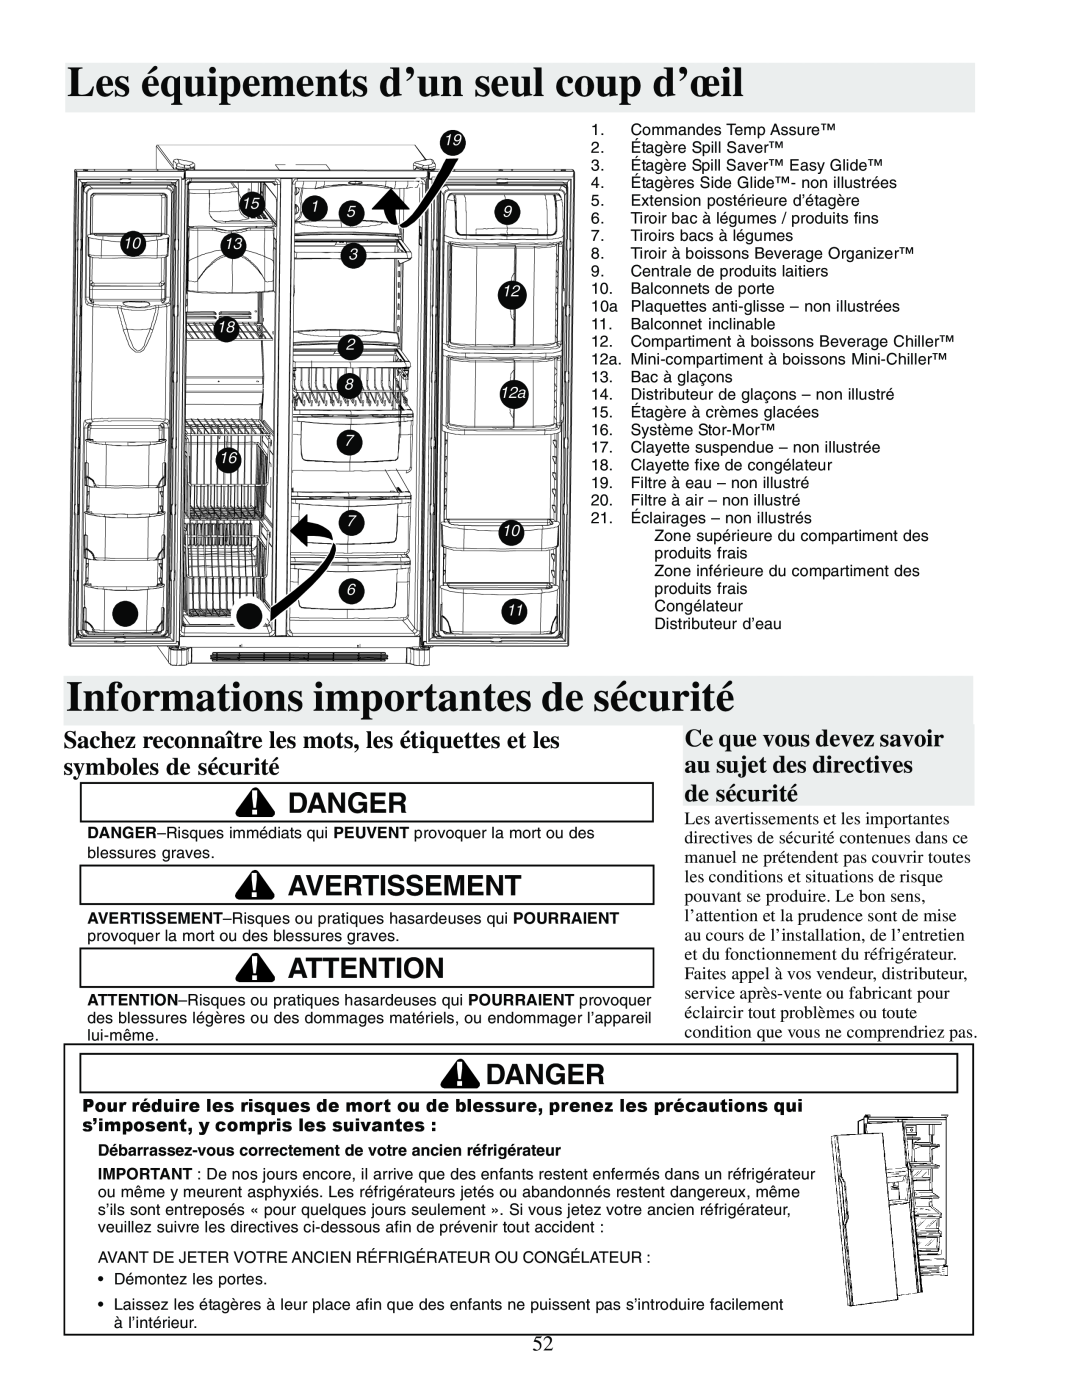 Amana XRSS687BB Les équipements d’un seul coup d’œil, Informations importantes de sécurité, Danger, Avertissement, 1013 